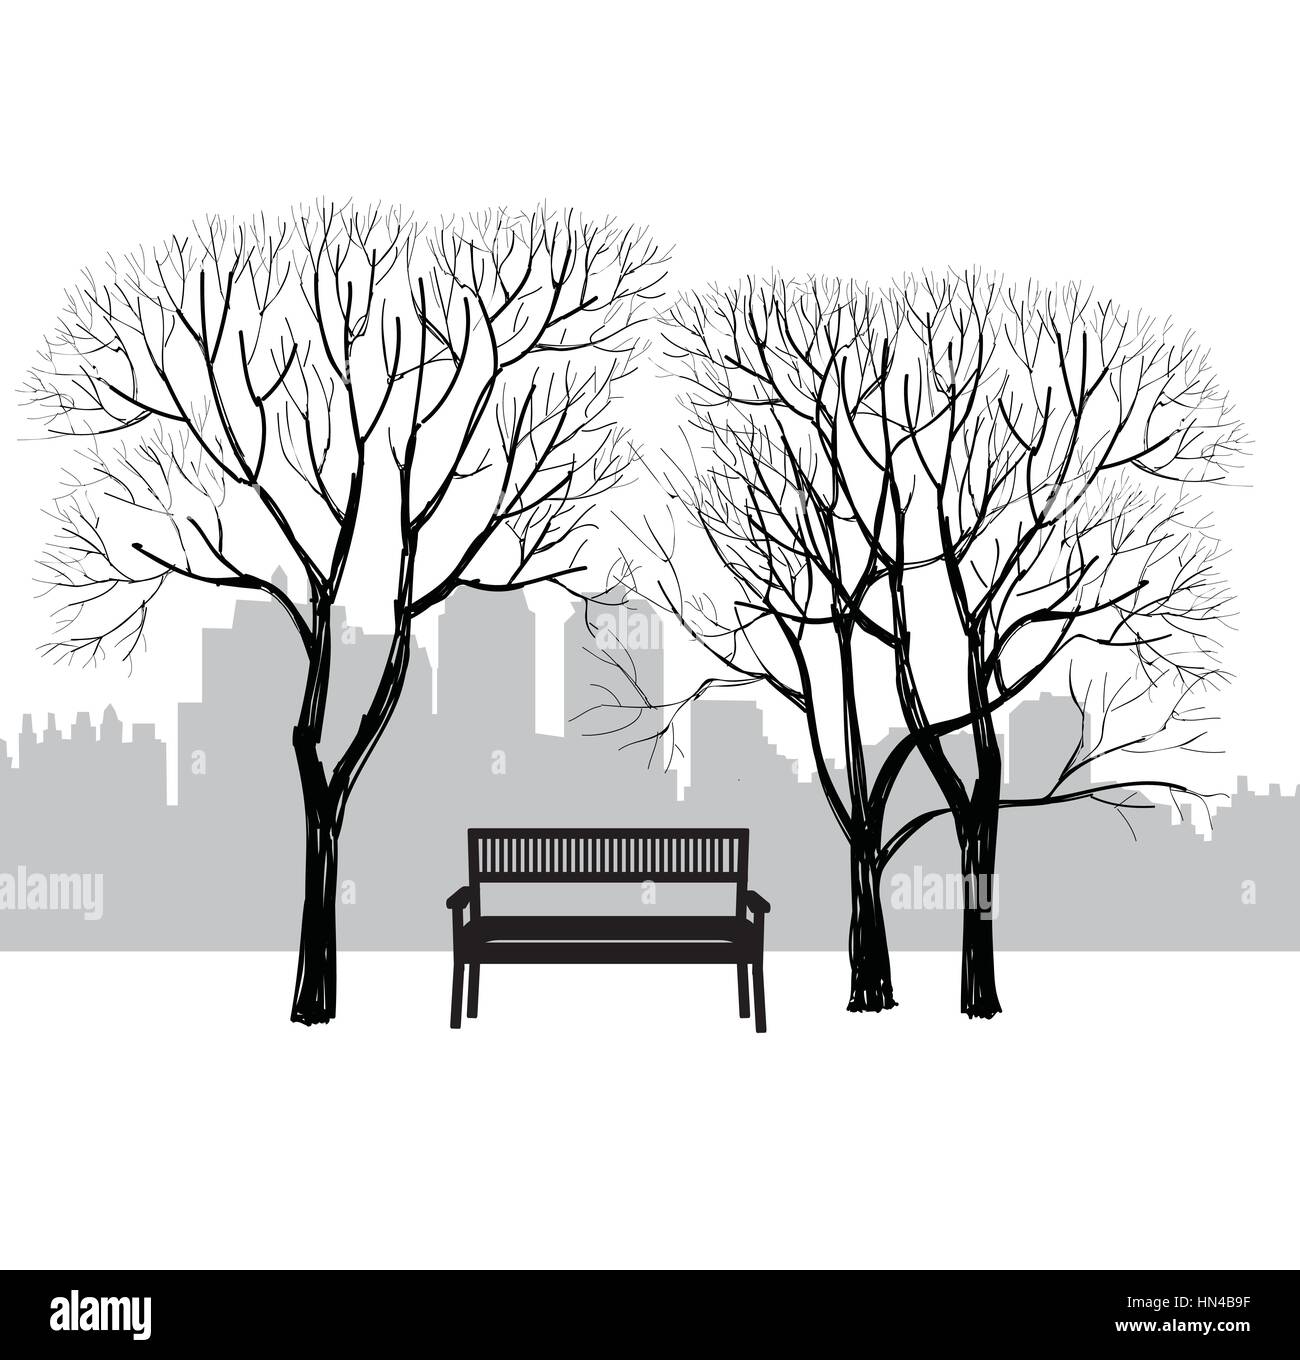 Banc de parc de la ville. Les arbres et les plantes. Paysage avec banc. cityscape vector illustration Illustration de Vecteur